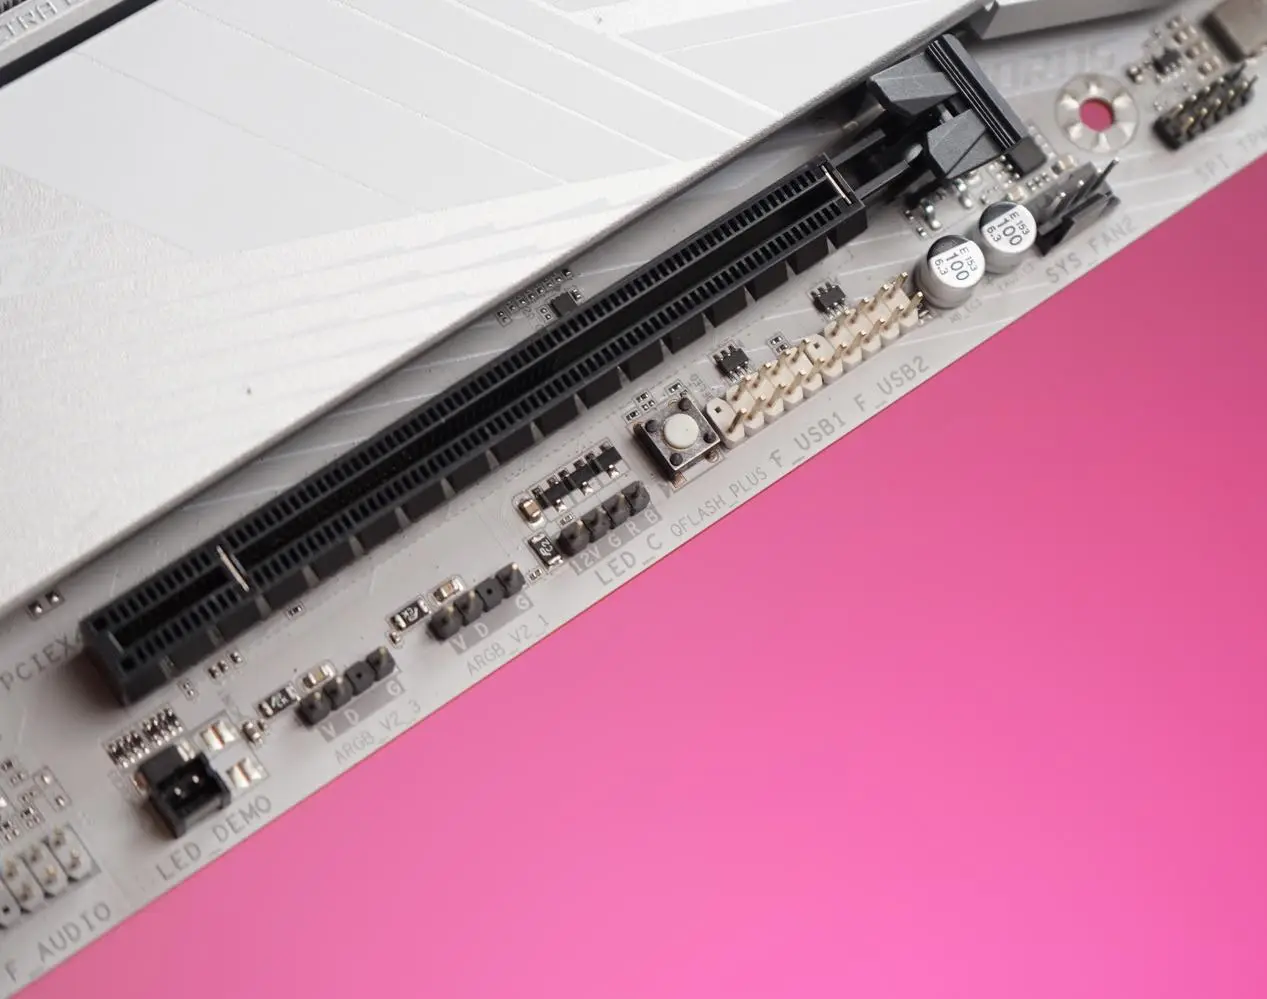 技嘉 DDR5 内存条：灯条设计的争议与魅力探讨  第5张